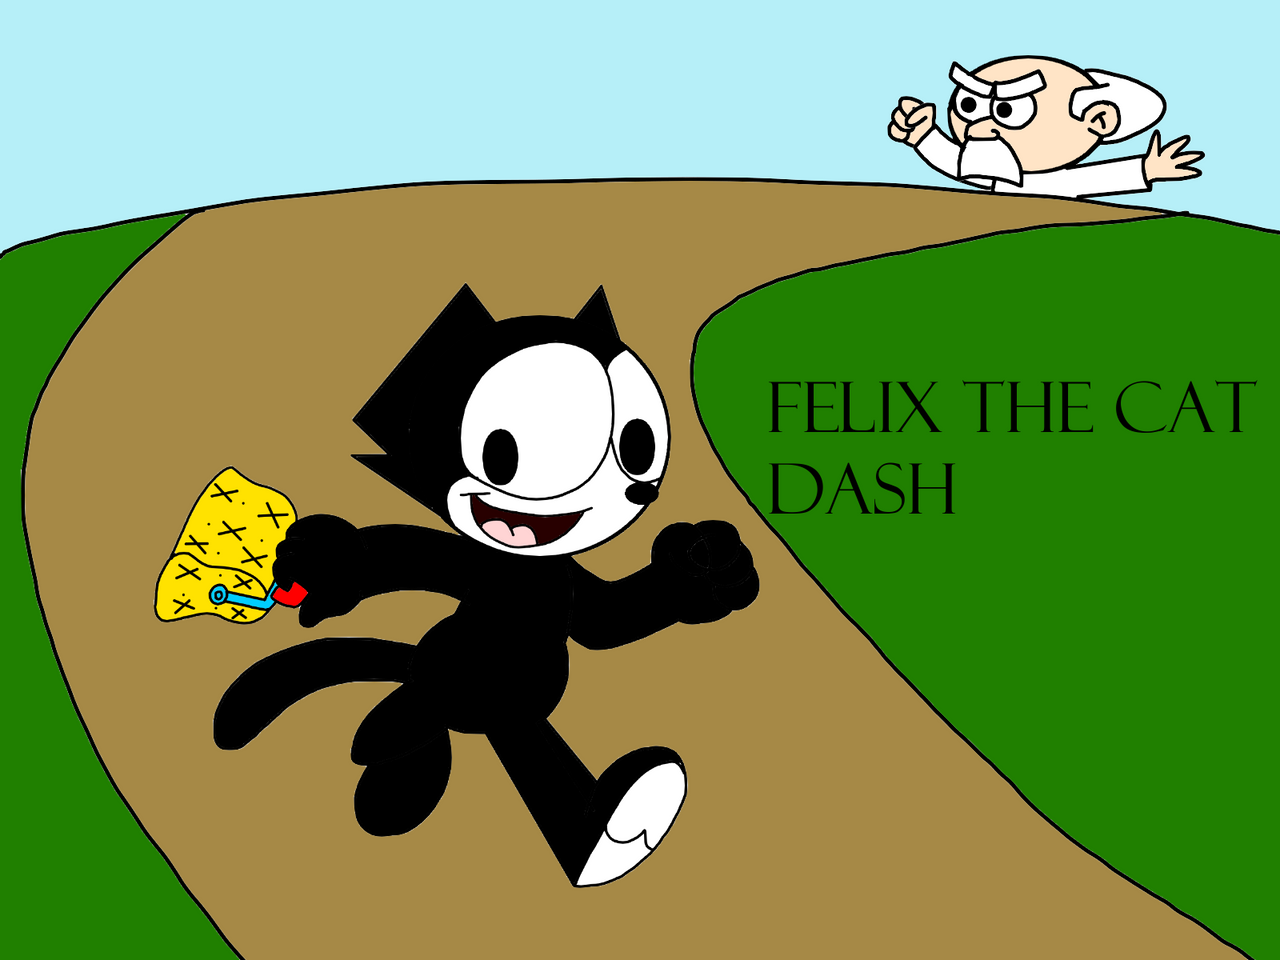 Felix the Cat Dash